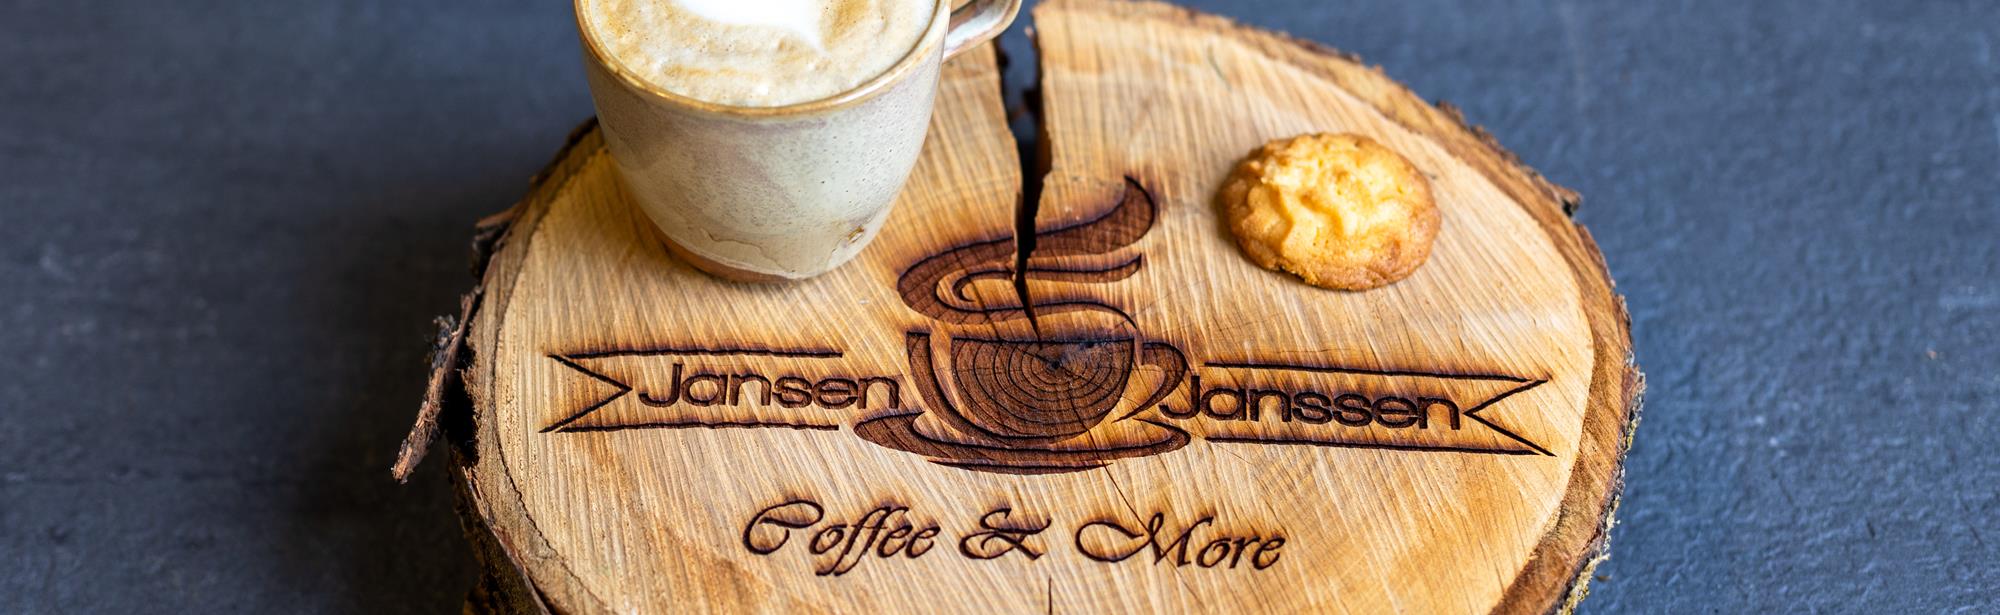 Jansen & Janssen Coffee & More